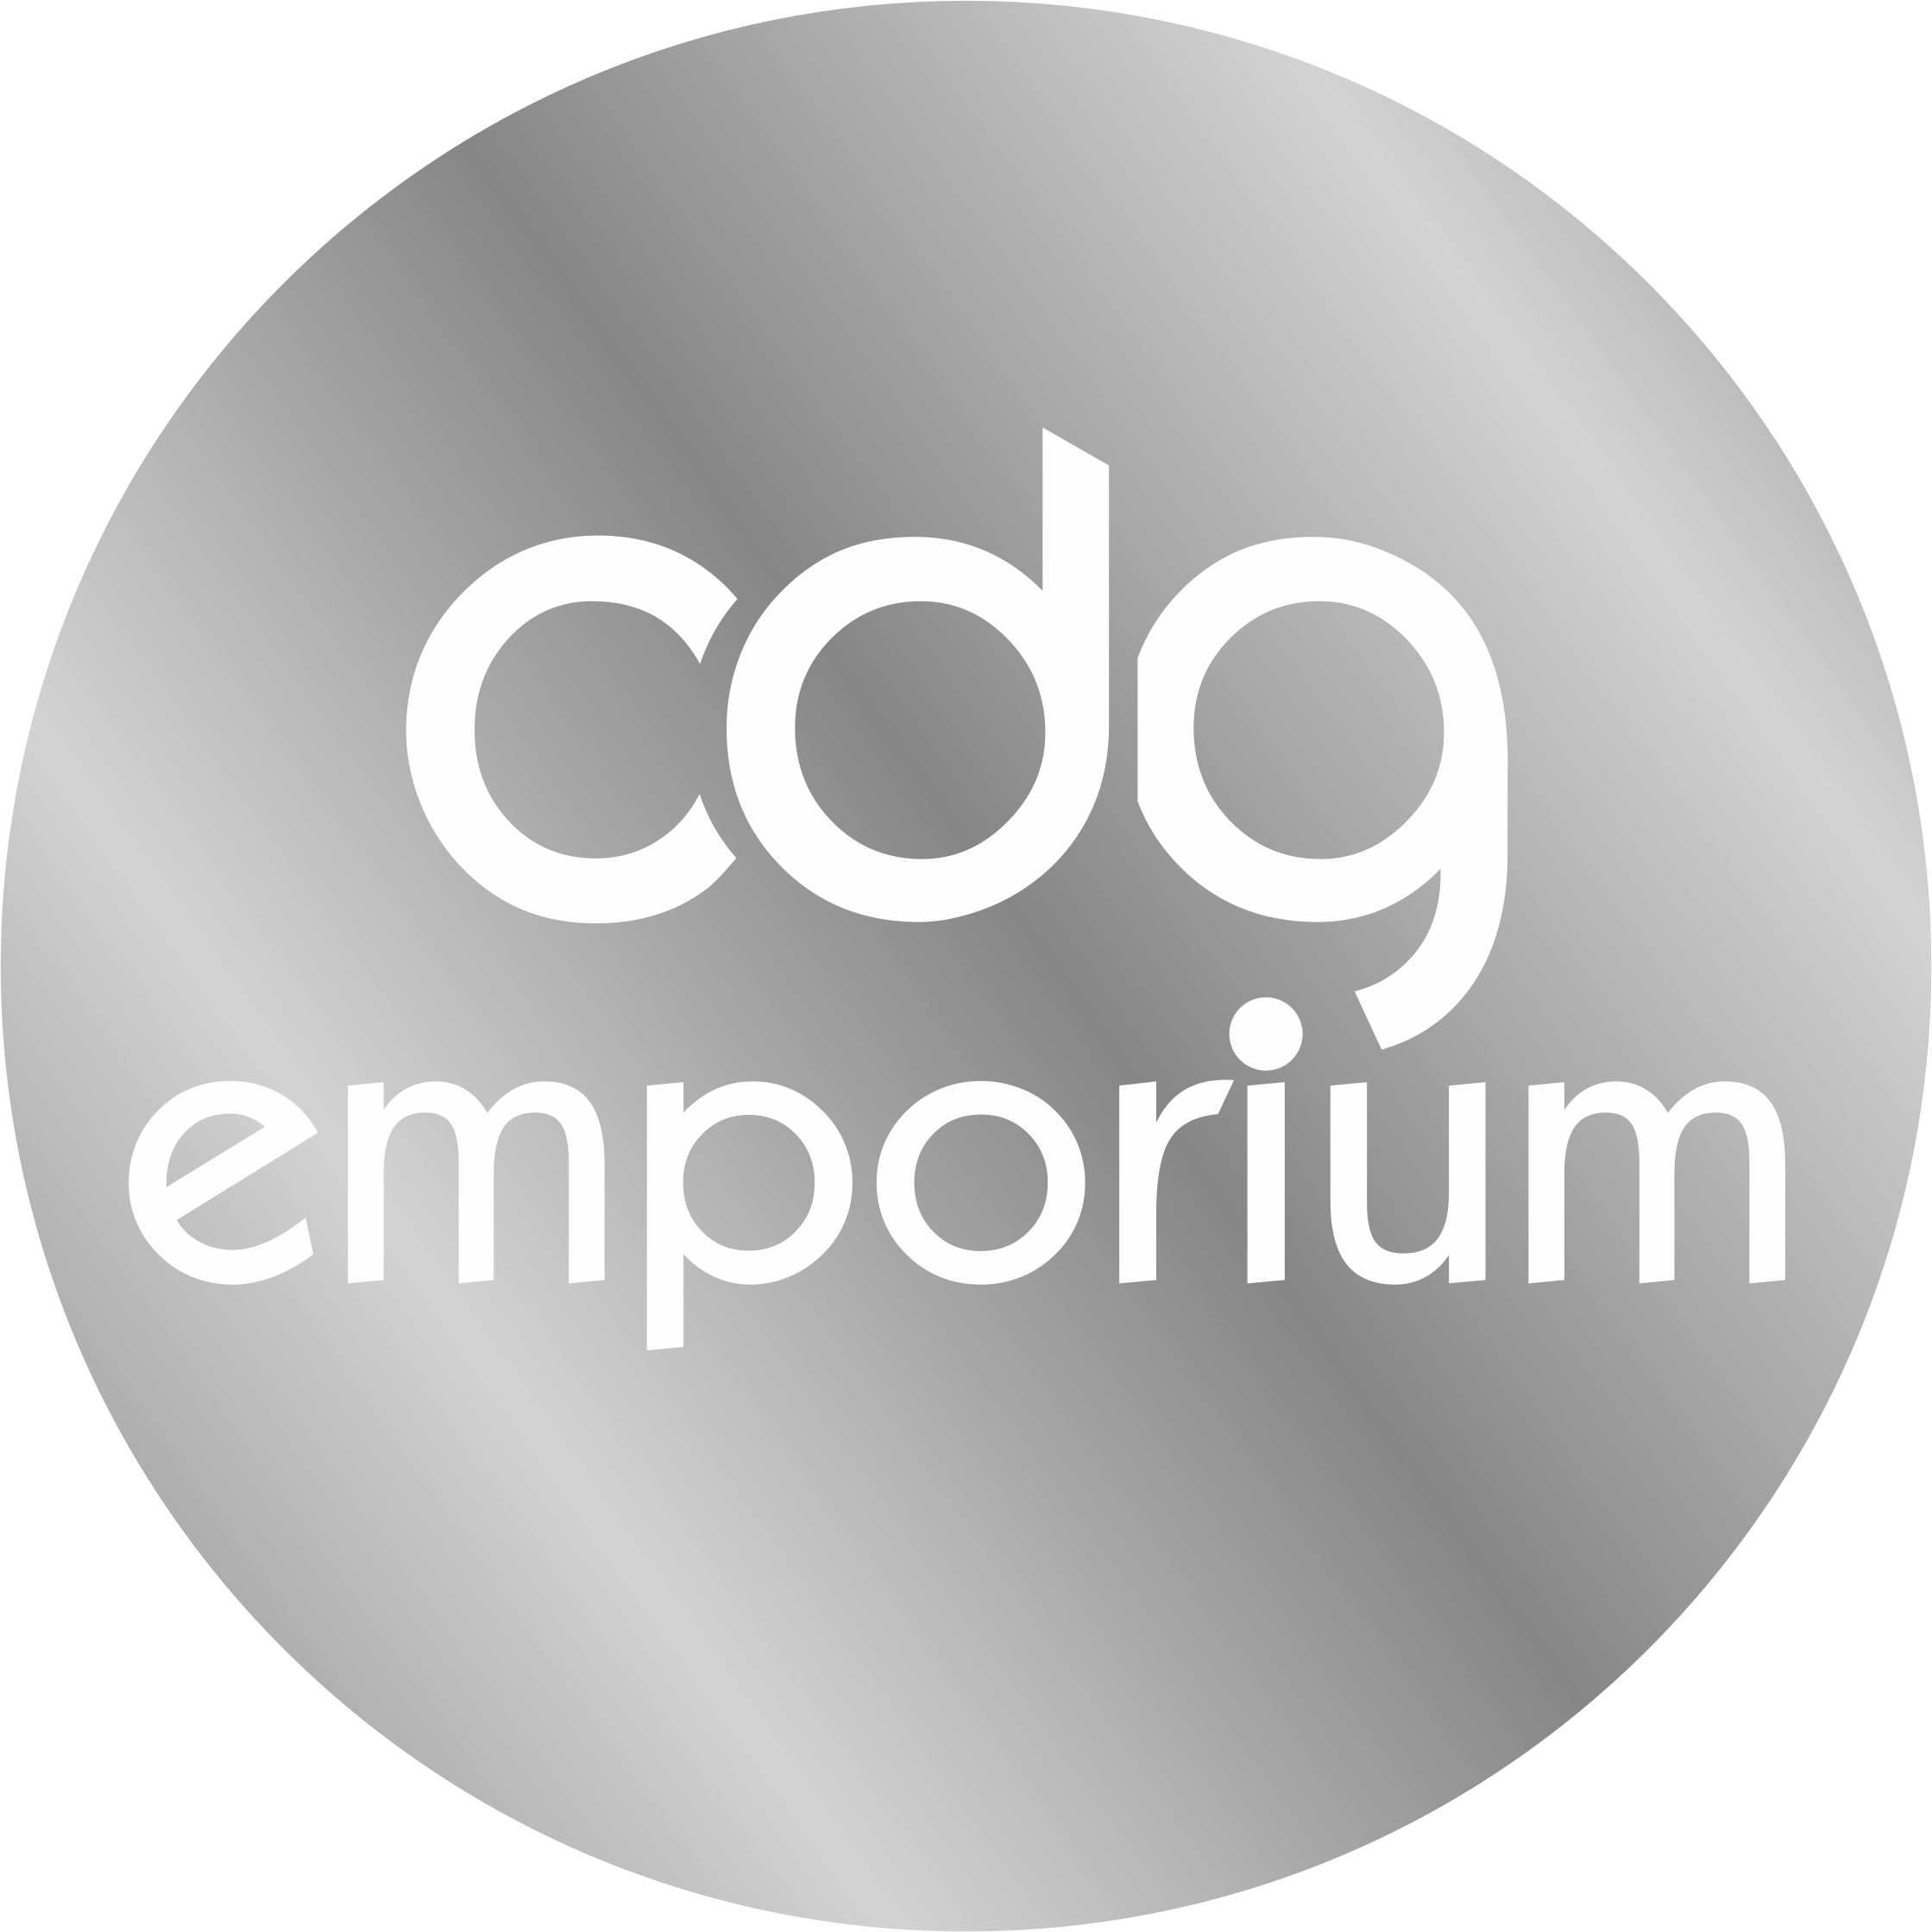 Cdg Emporium